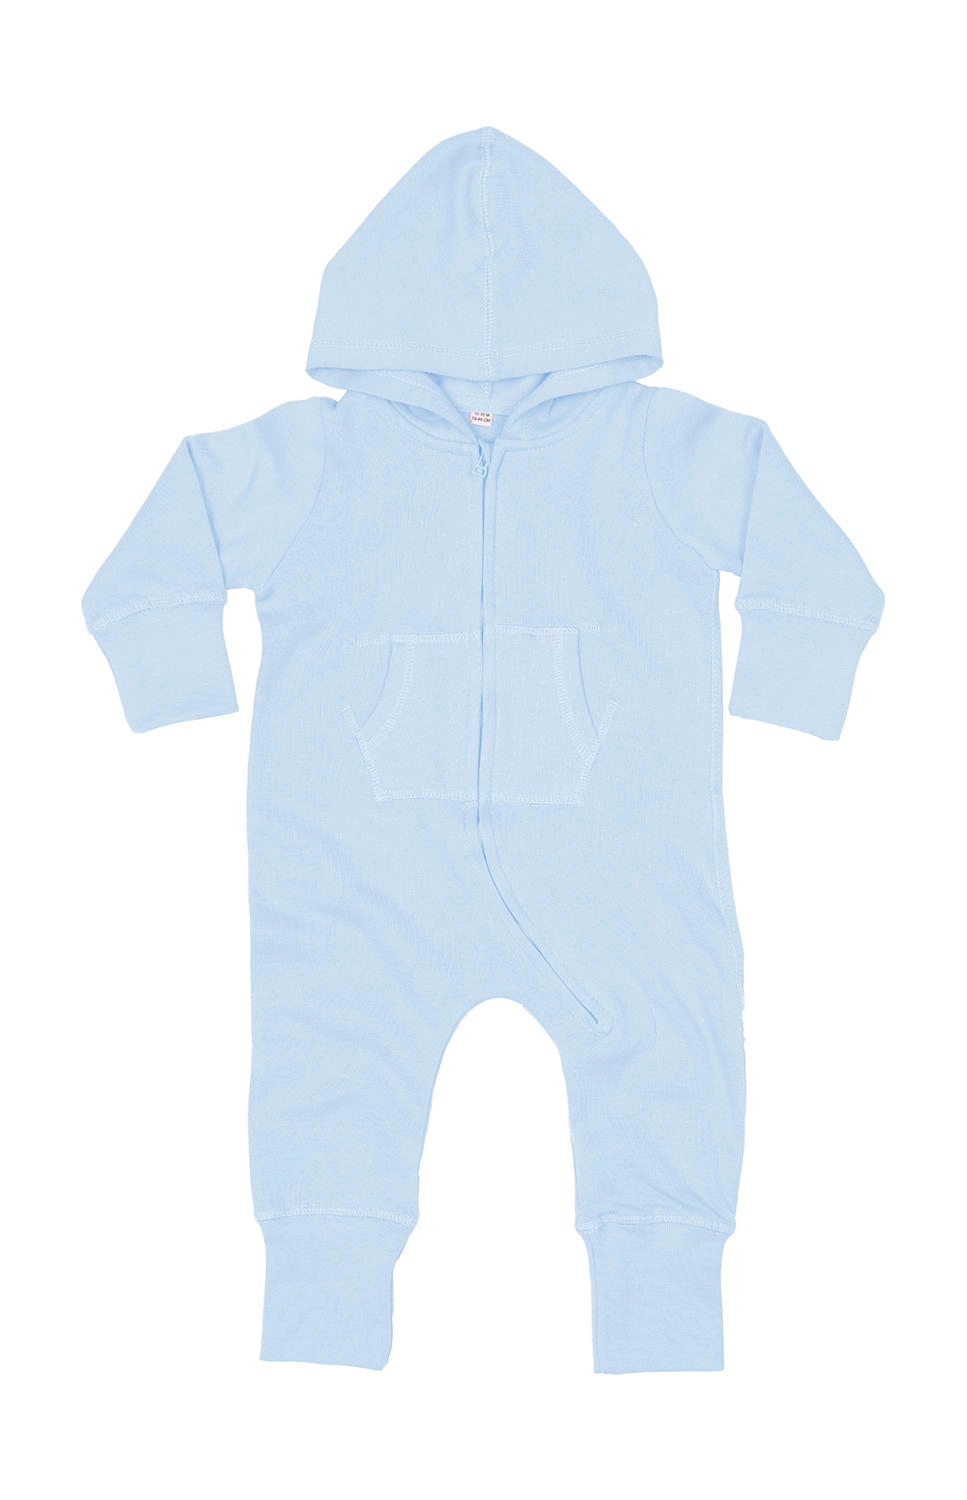 Baby All-in-One zum Besticken und Bedrucken in der Farbe Dusty Blue Organic mit Ihren Logo, Schriftzug oder Motiv.